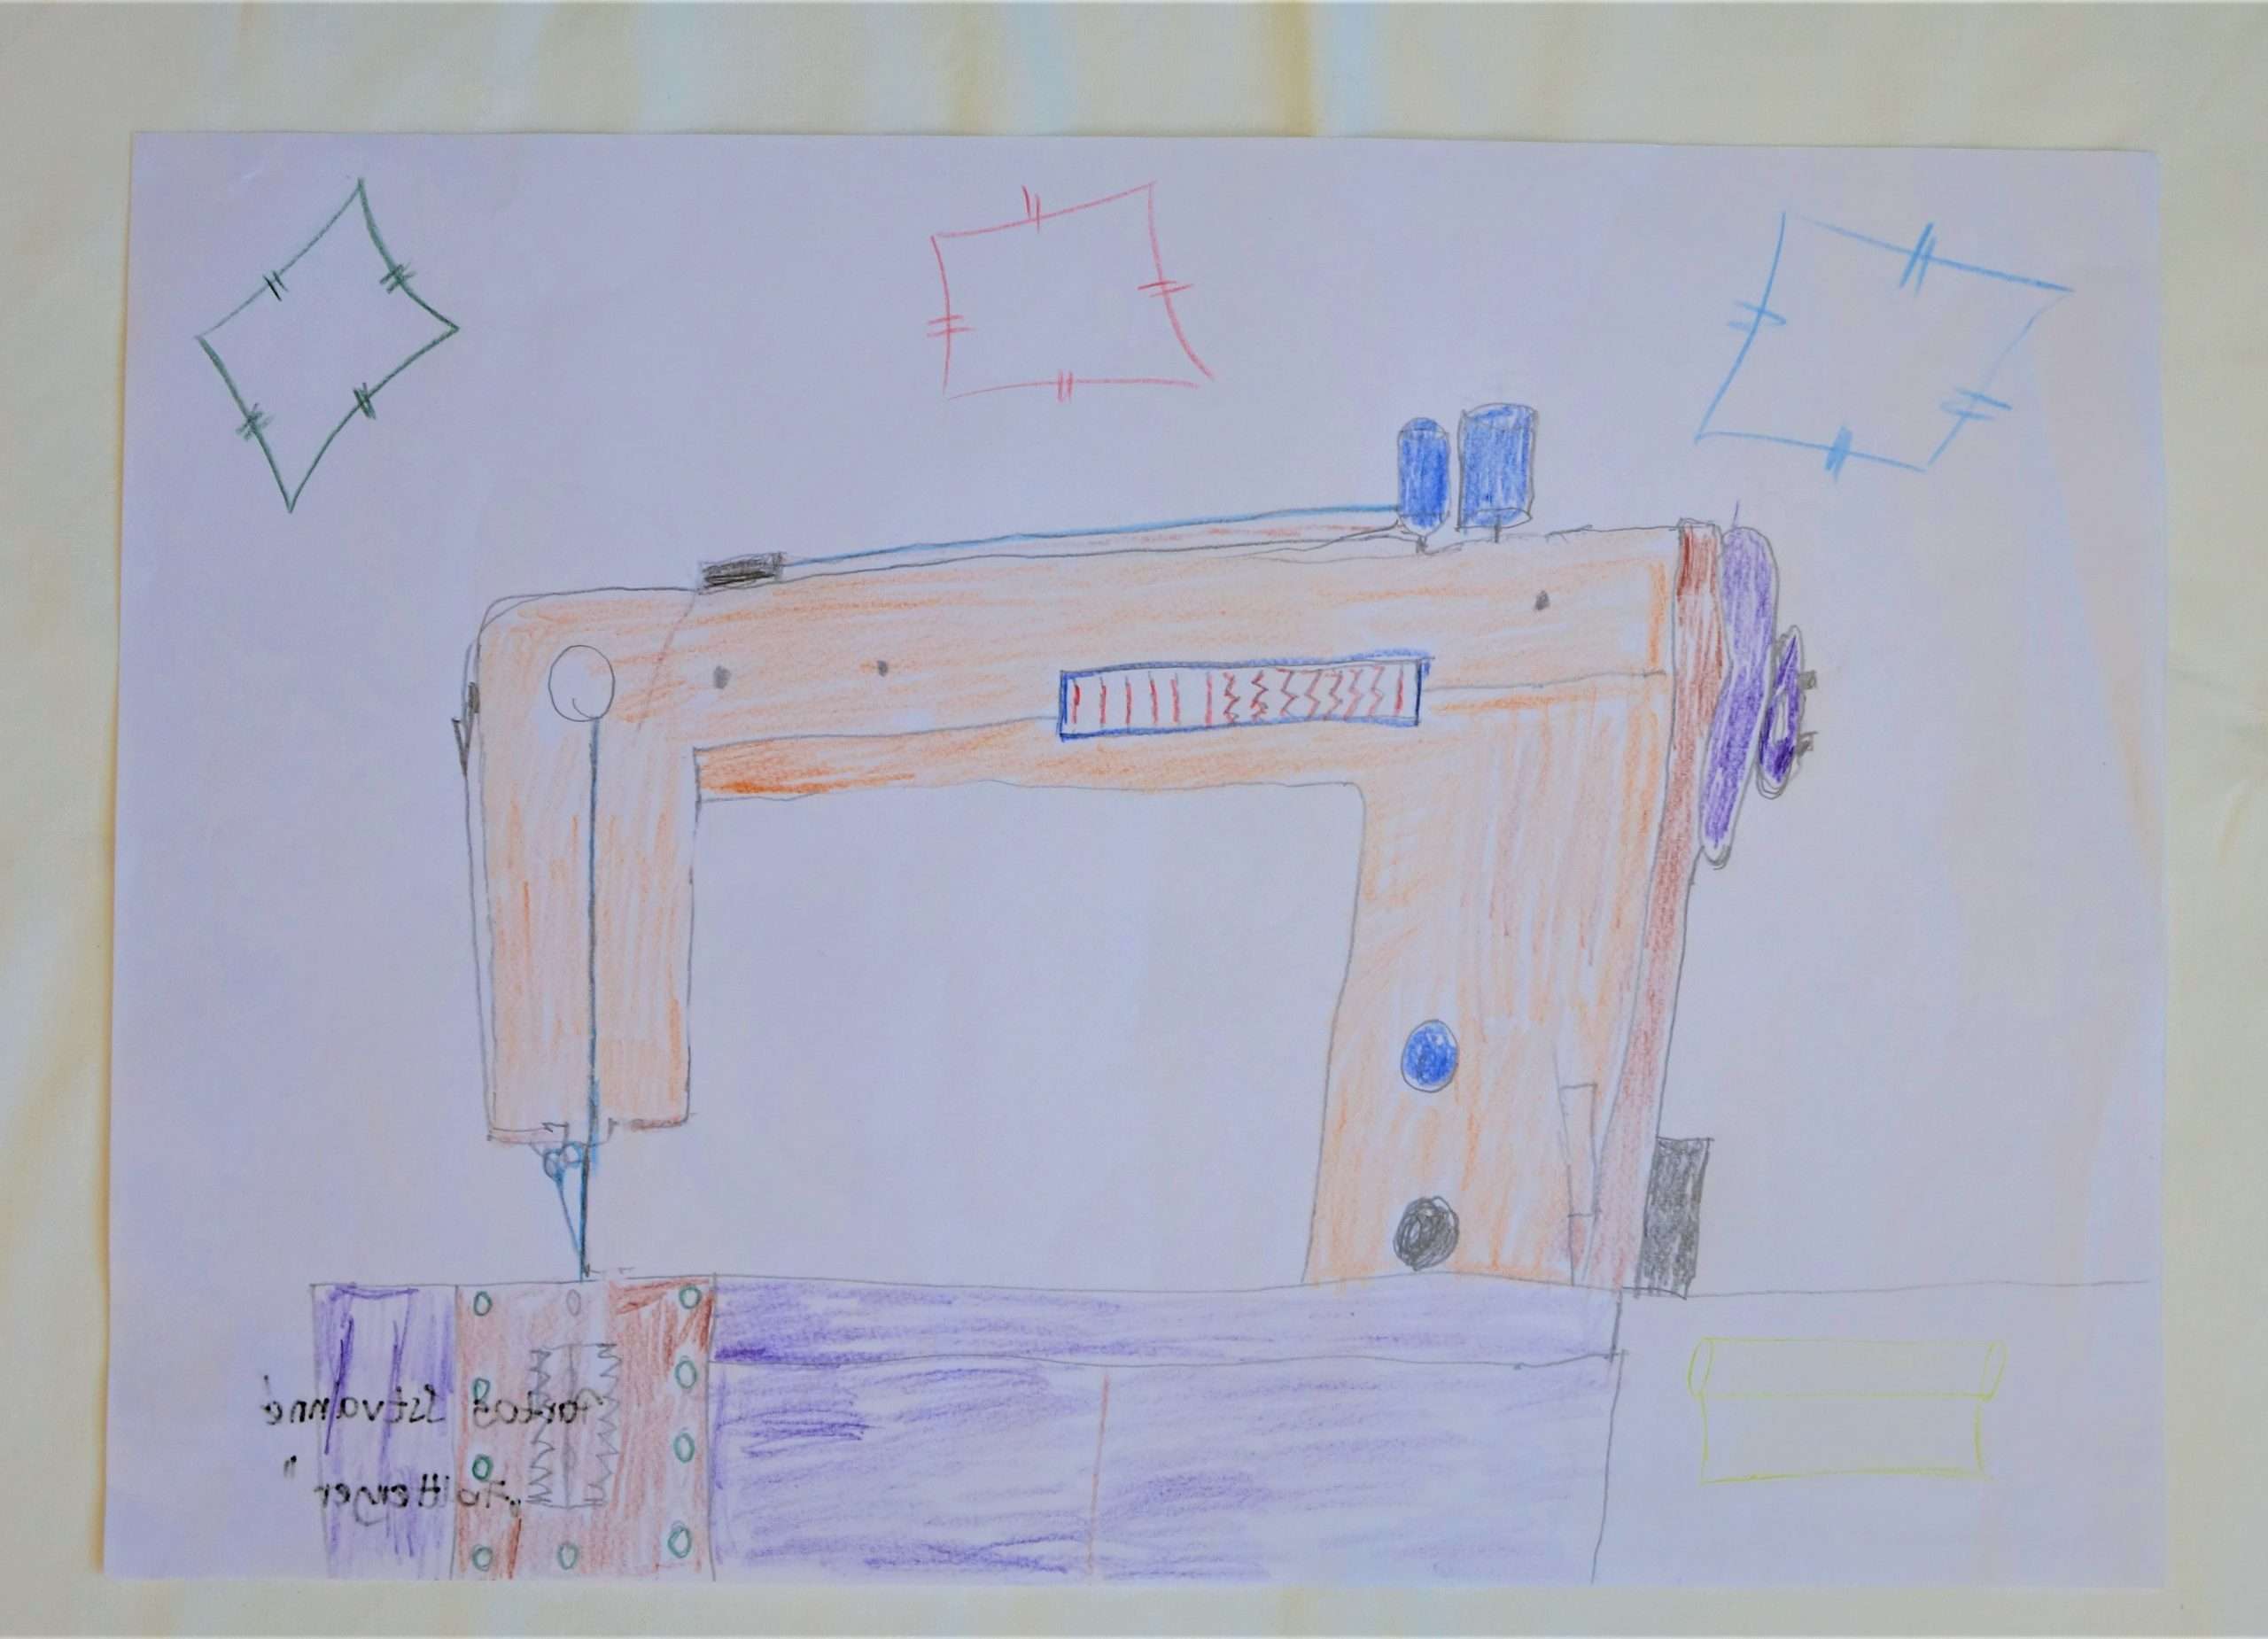 Színes ceruzával készített rajz, amely egy varrógépet ábrázol. A varrógép lila és narancssárga színekkel van kiszínezve. A kép felső részére 3 folt körvonalait rajzolta az alkotó.